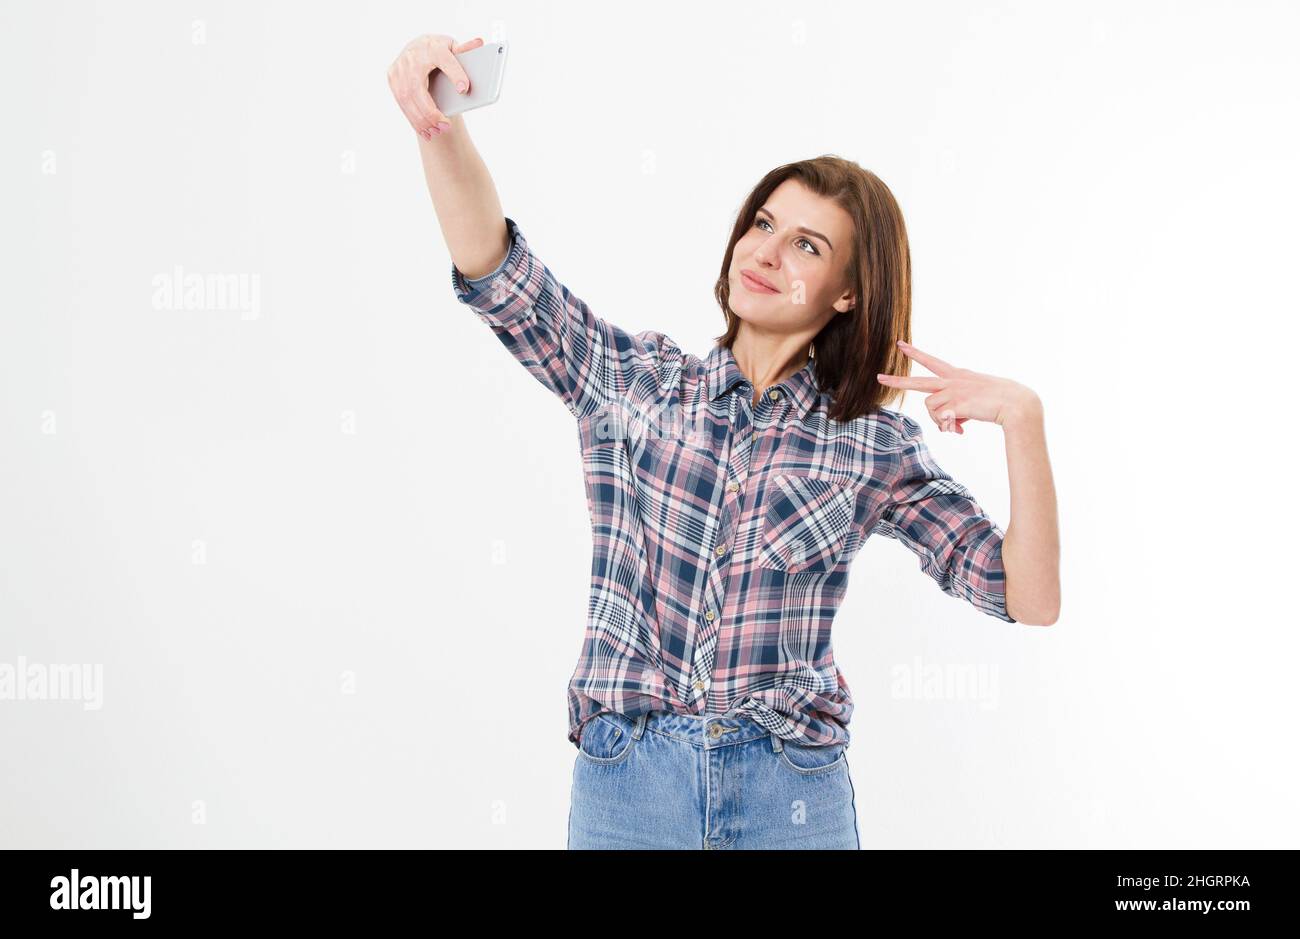 Selfie von schönen niedlichen stilvollen flirty fröhlich schöne attraktive entzückende Brünette Mädchen Frau mit langen Haaren in lässigen Denim-Shirt, zeigt zwei Finger, Stockfoto